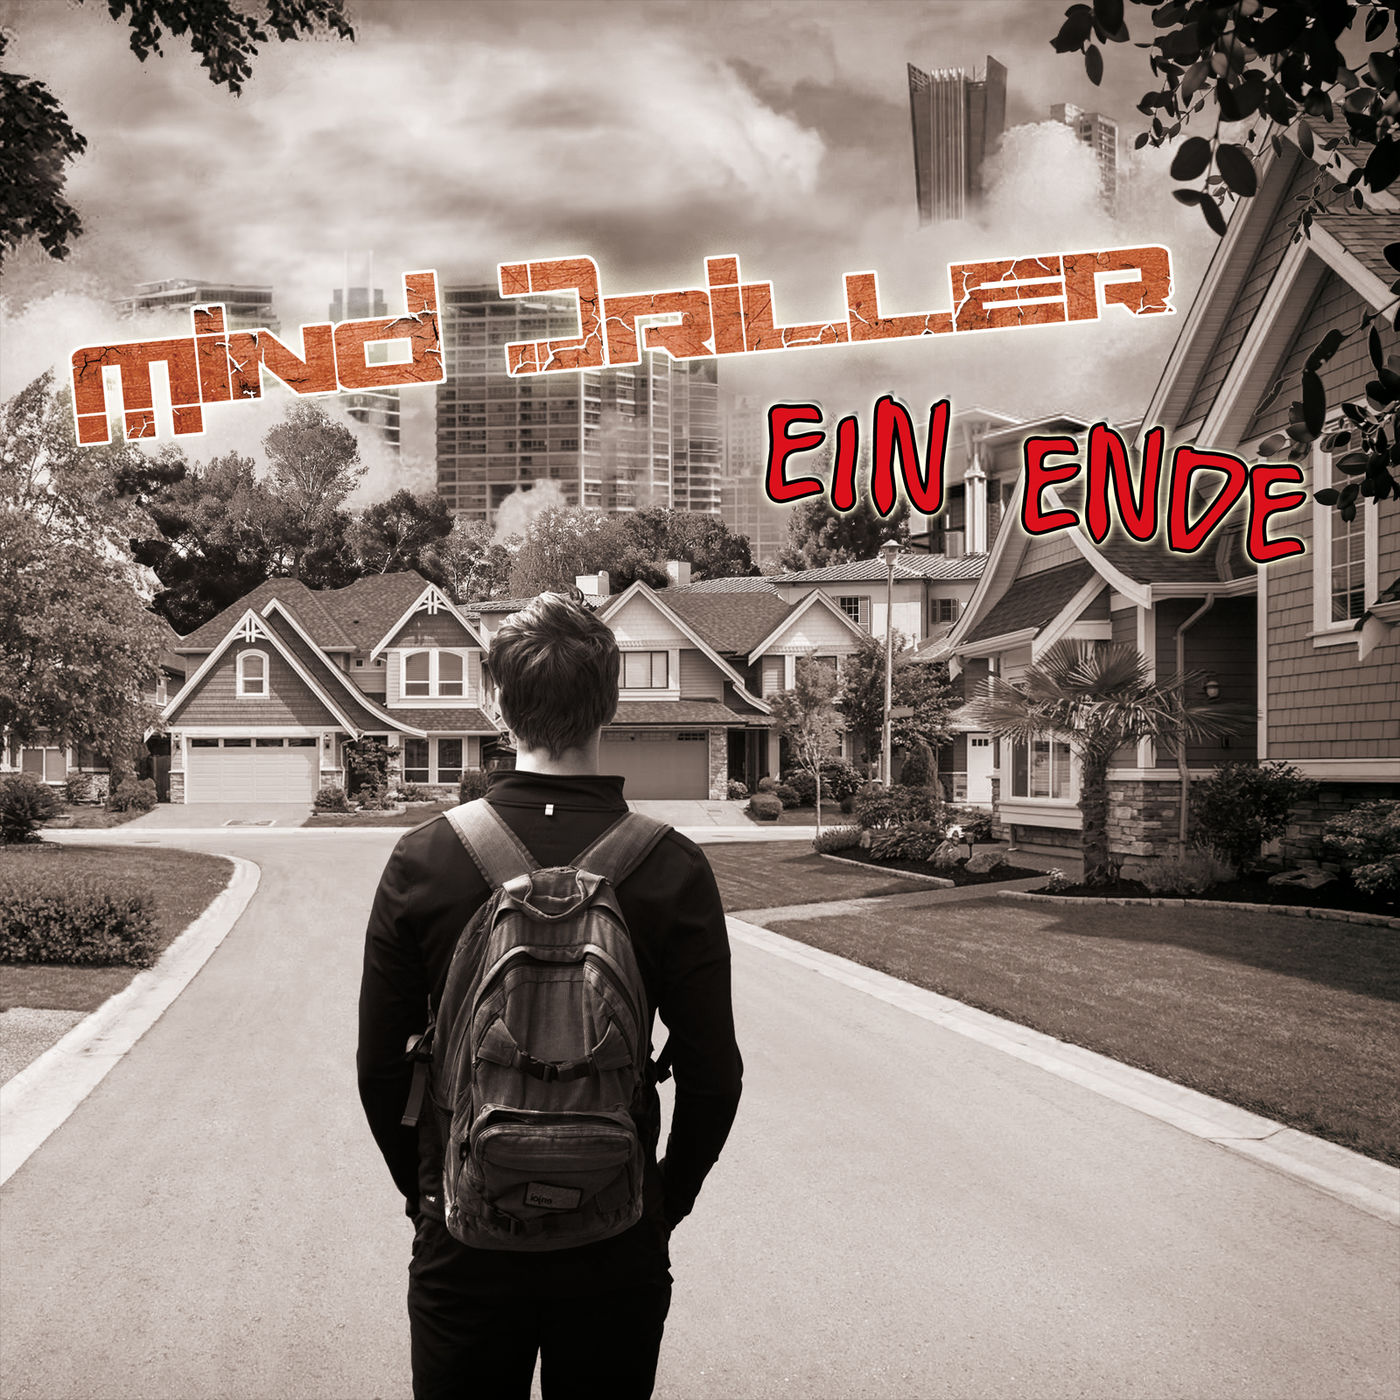 Mind Driller - Ein Ende (Single) (2019)